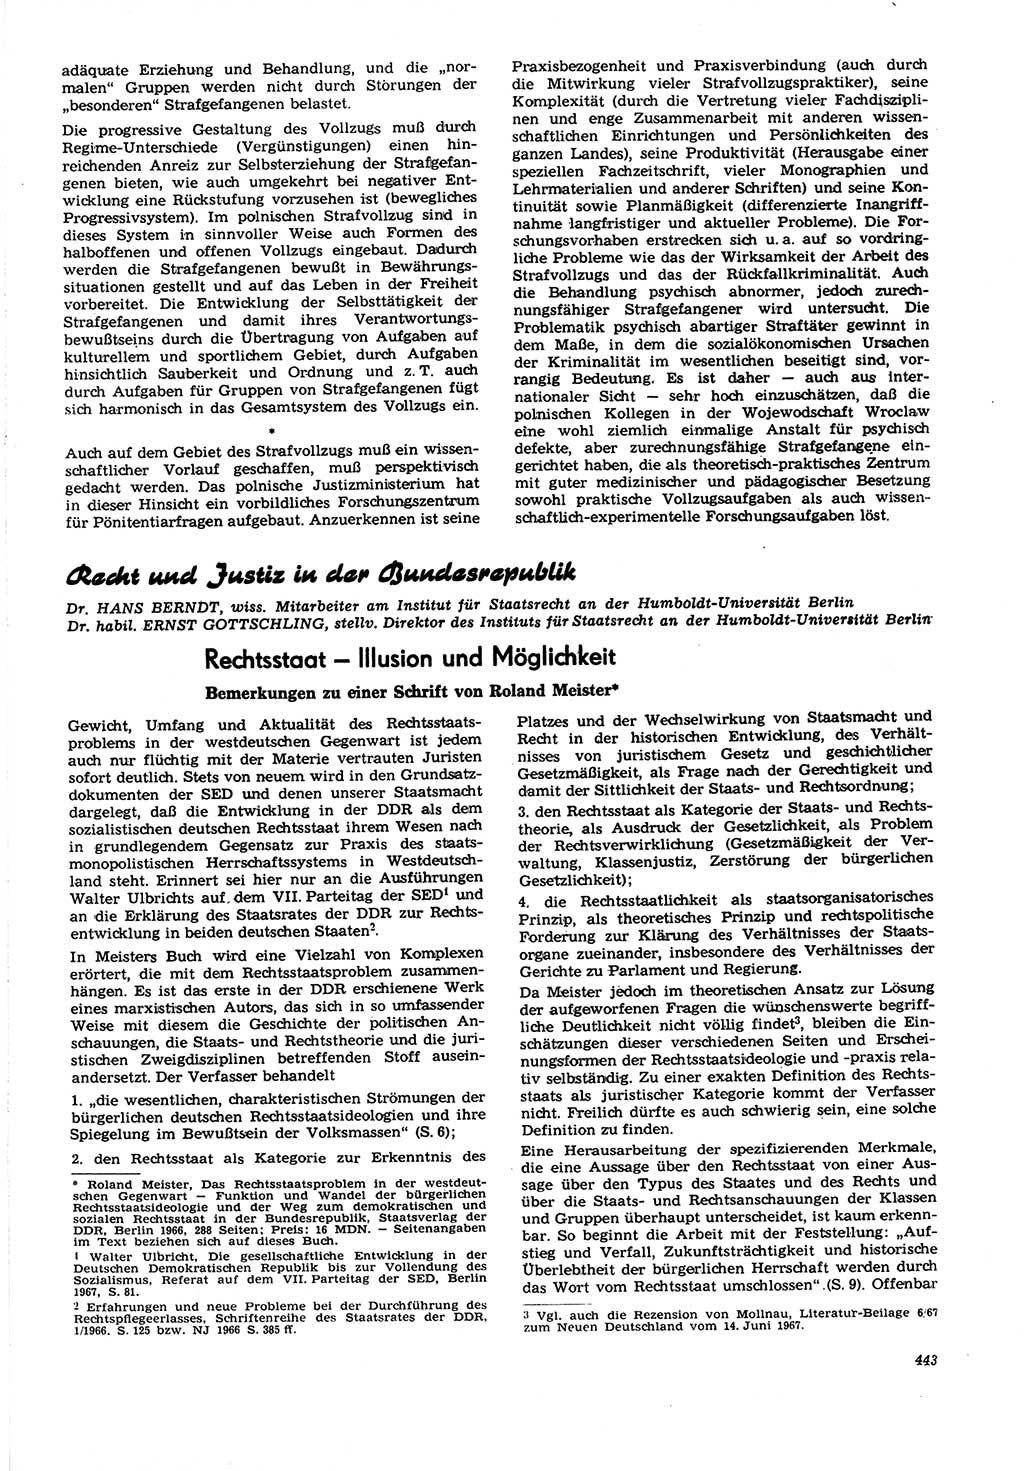 Neue Justiz (NJ), Zeitschrift für Recht und Rechtswissenschaft [Deutsche Demokratische Republik (DDR)], 21. Jahrgang 1967, Seite 443 (NJ DDR 1967, S. 443)